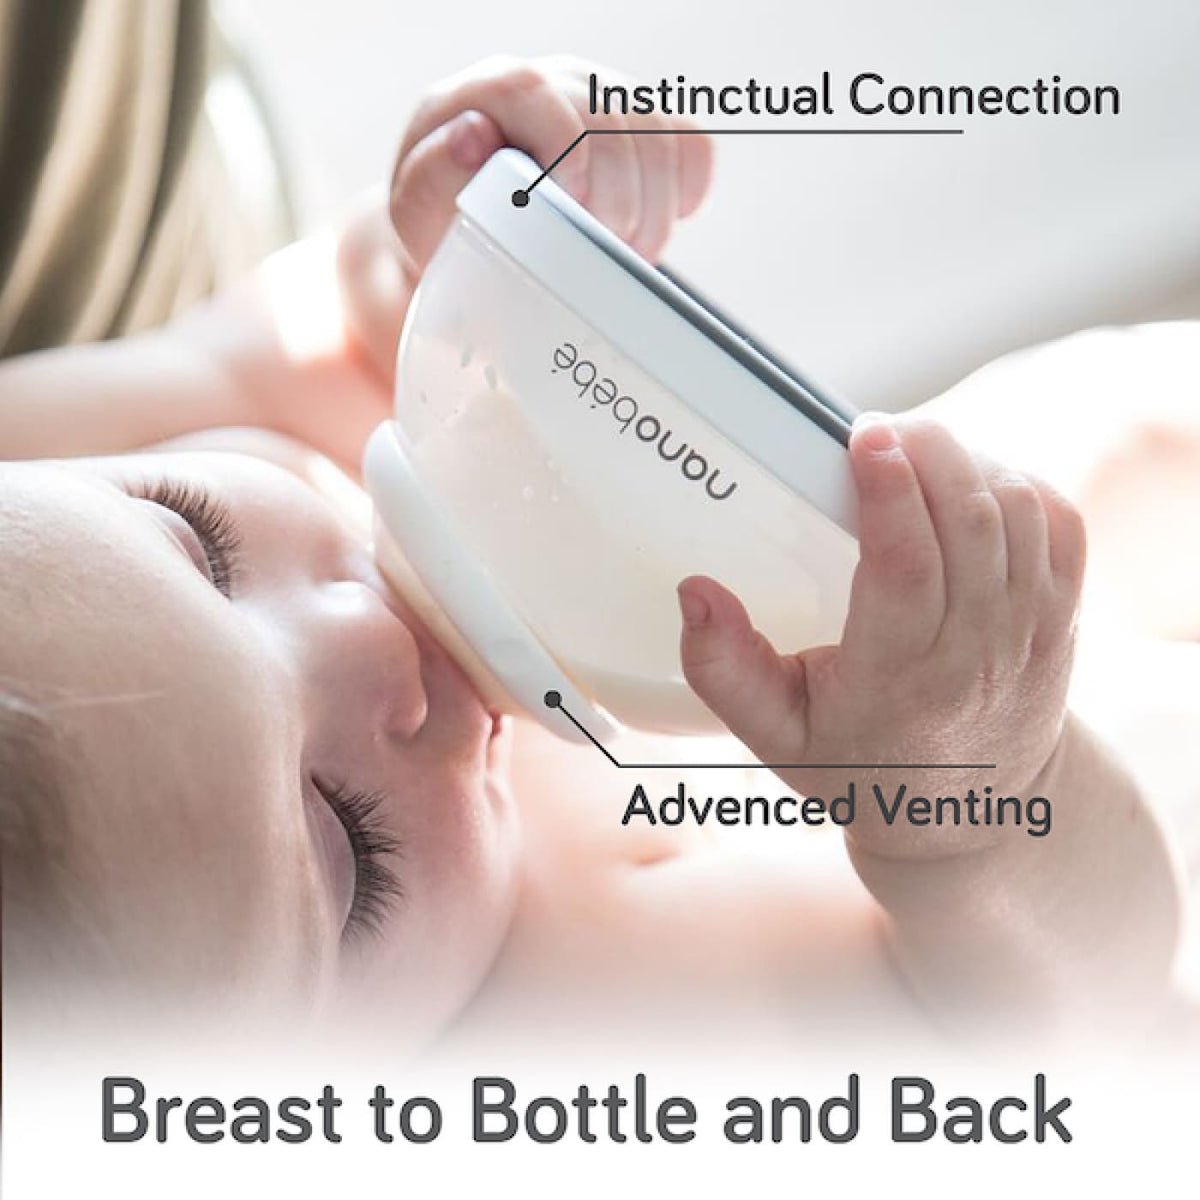 Nanobebe Breastmilk Bottle 150ml Single-Pack - Gray - Grey - NURSING &amp; FEEDING - BOTTLES/TEATS